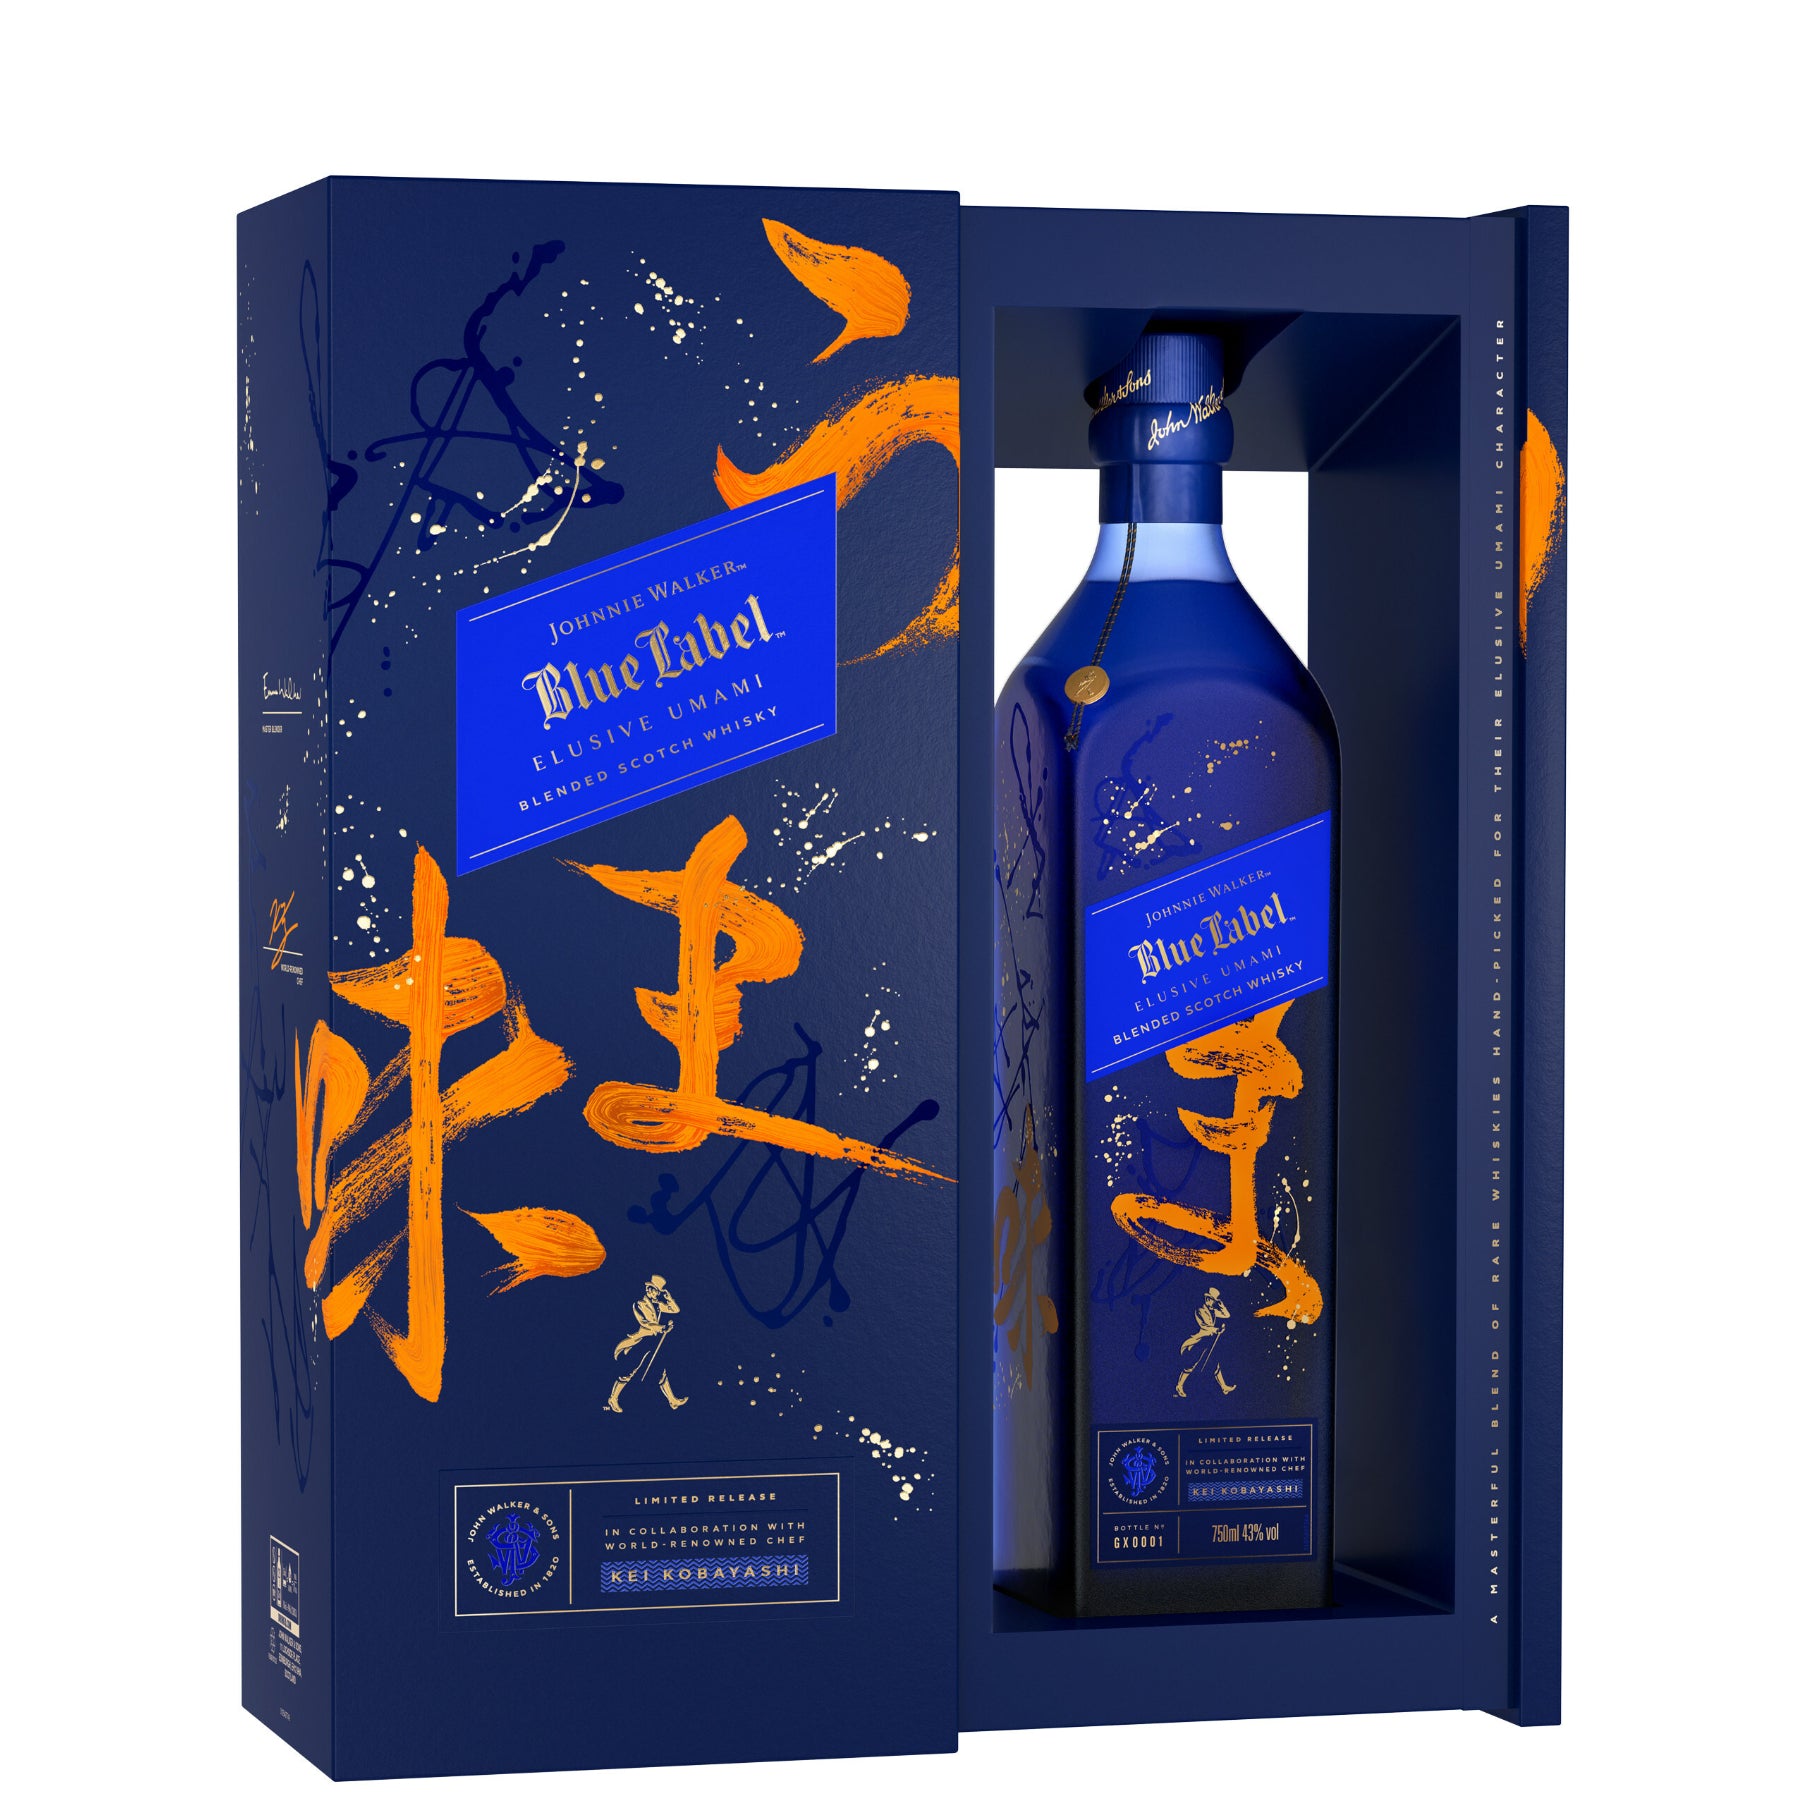 Johnnie Walker Blue Label Blended Scotch Whiskey - 1.75 lt